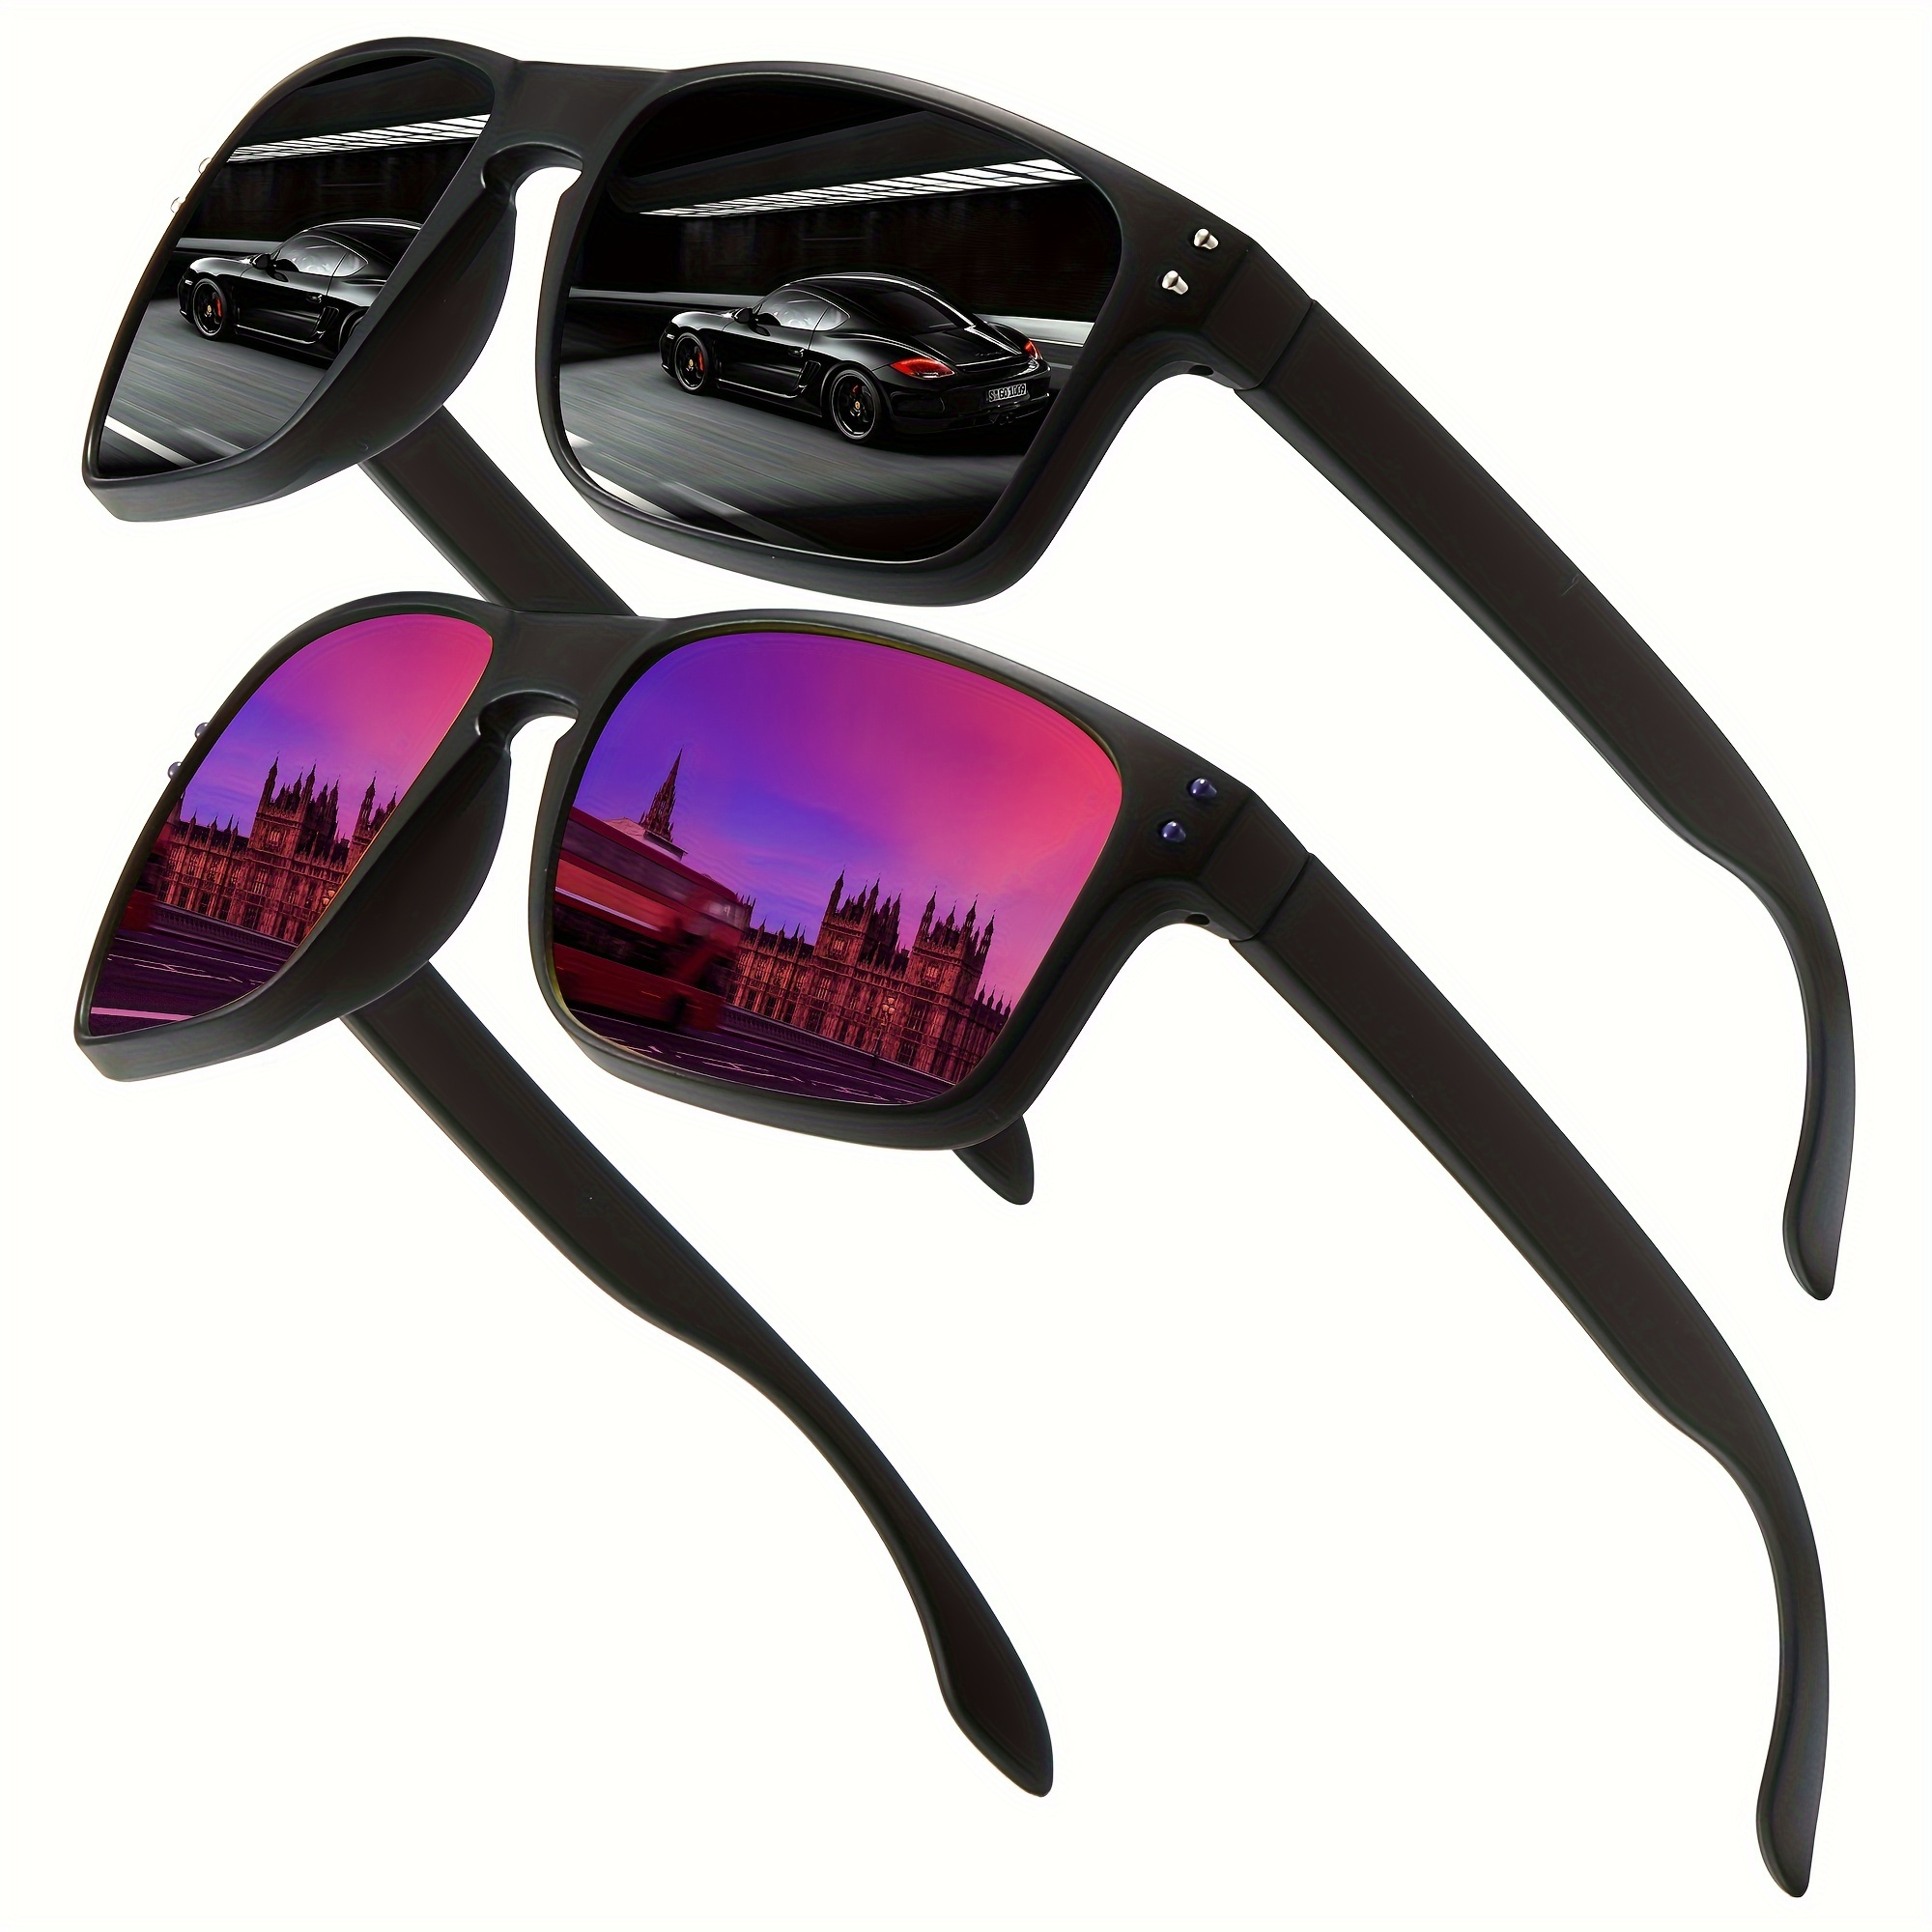 1pair 2pairs Trendy Classic Square Polarized Sunglasses For Men